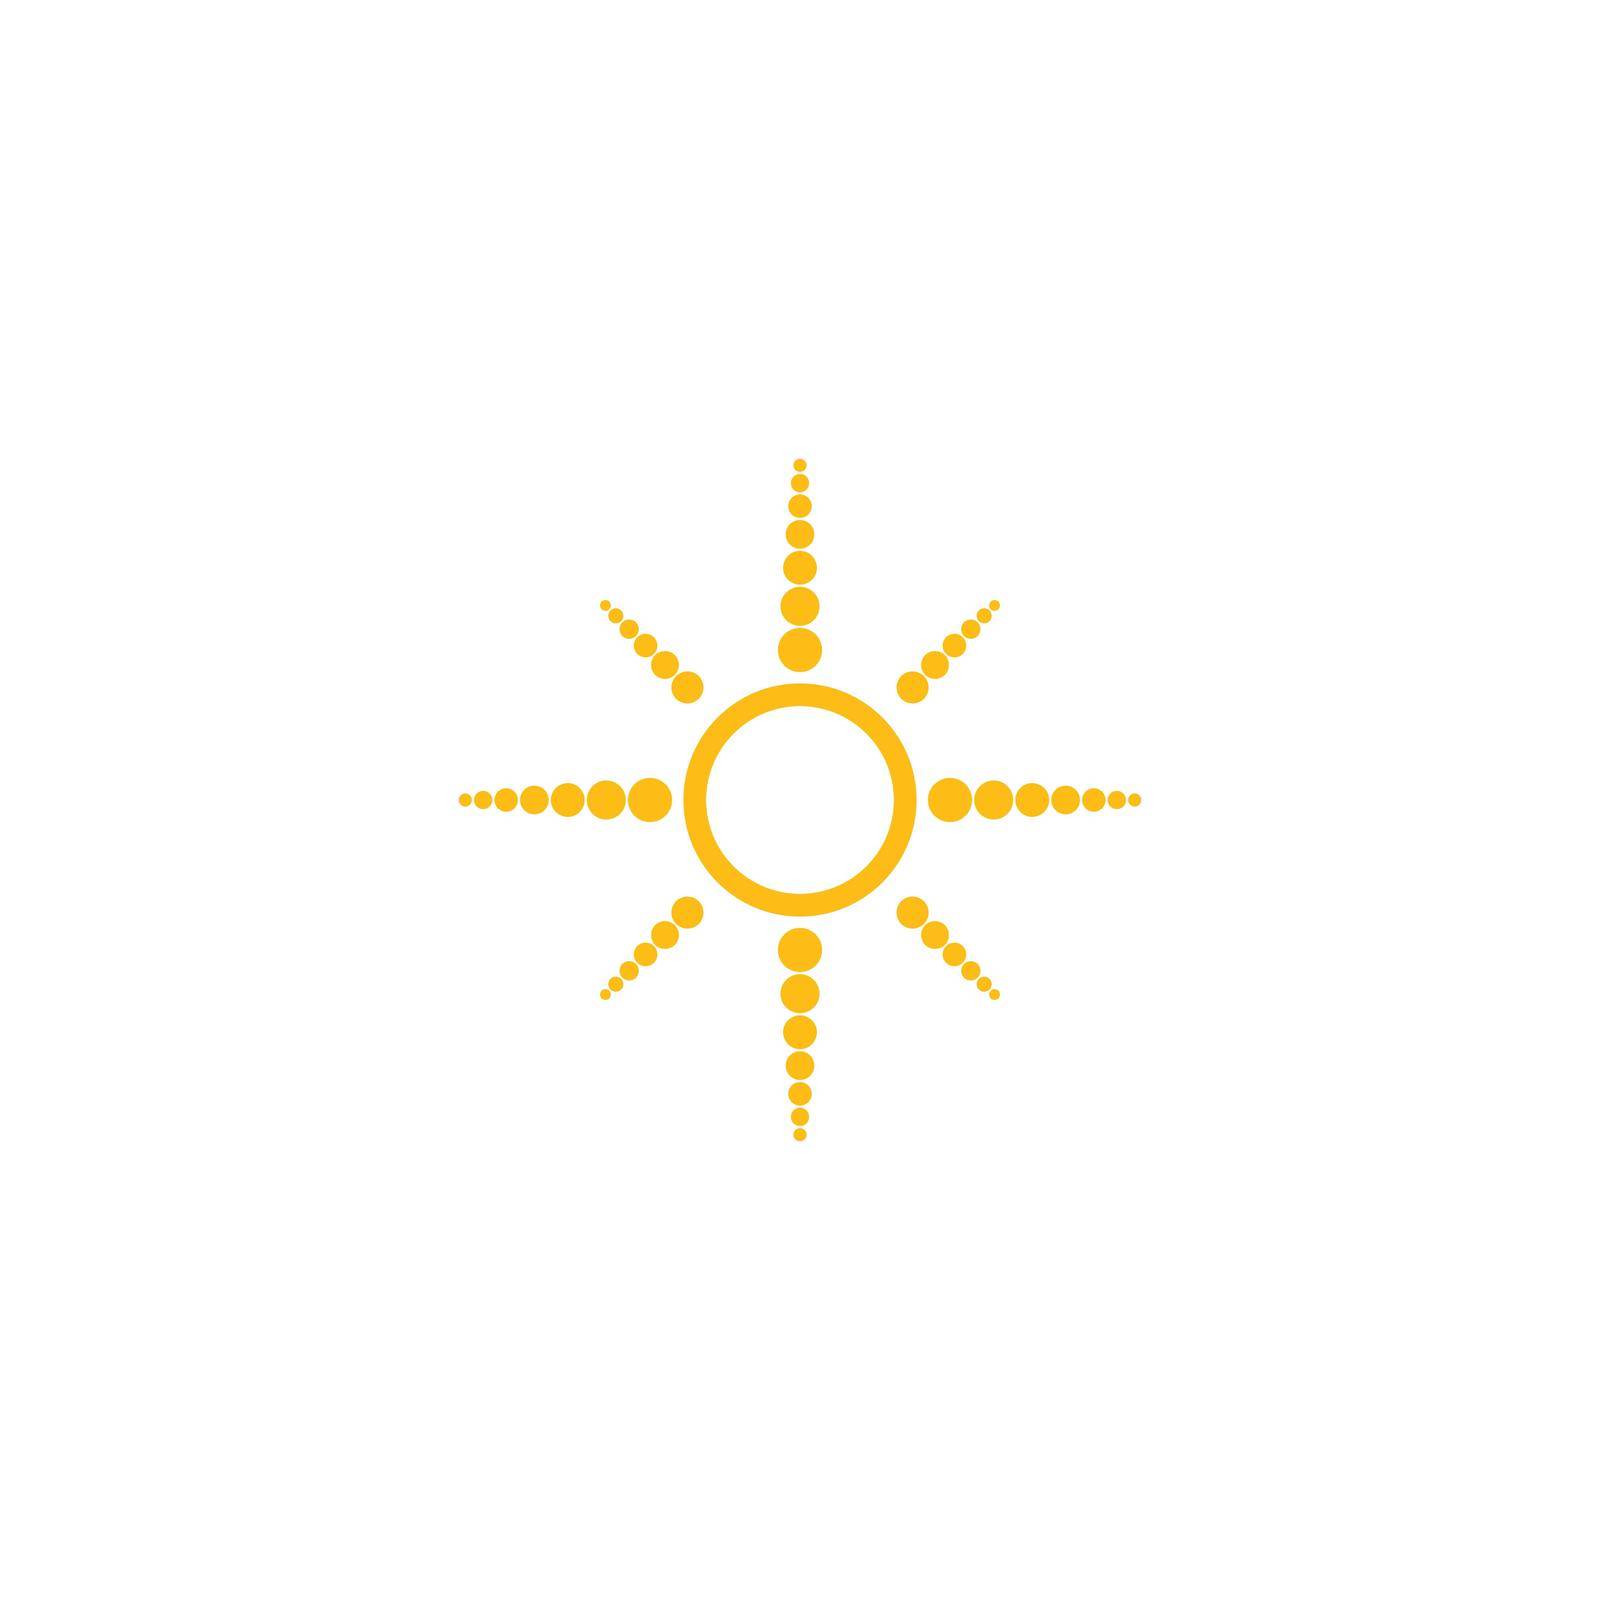 sun ilustration logo vector by awk